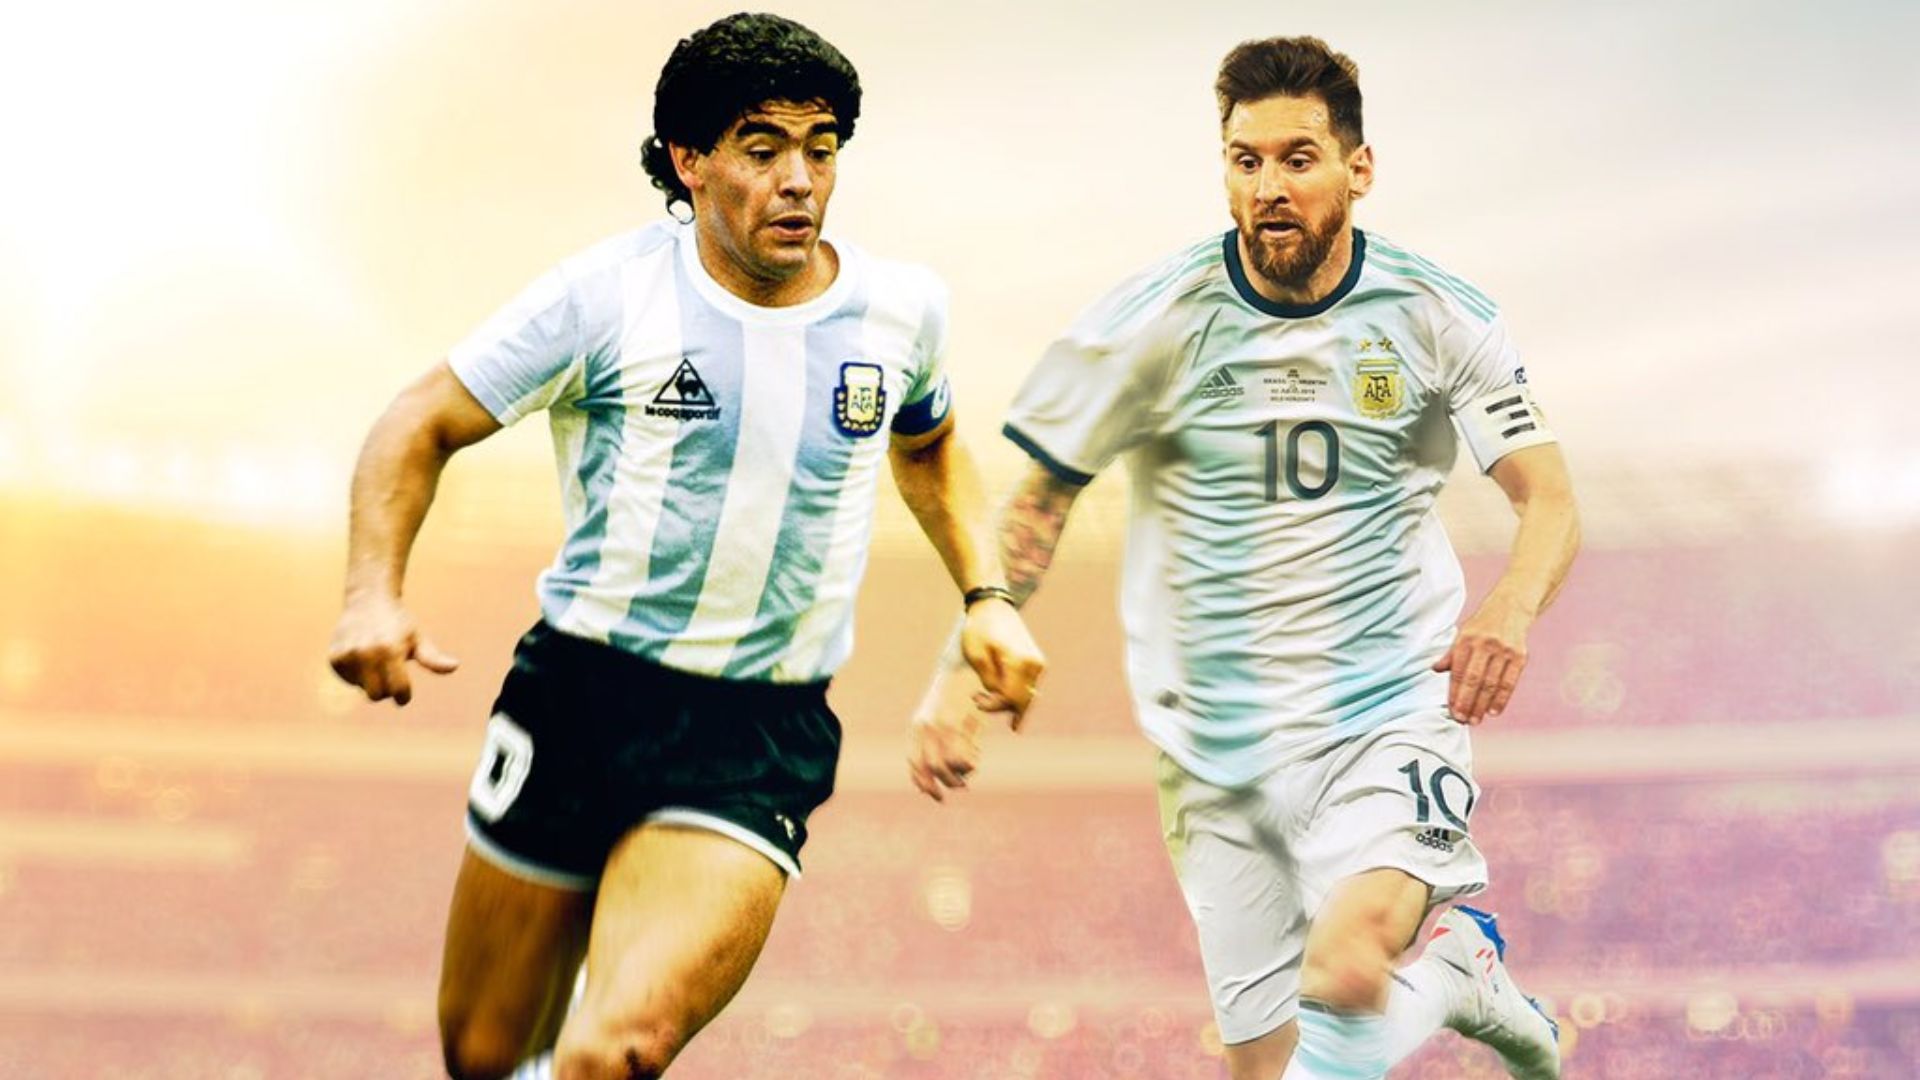 Messi and Maradona Wallpaper 8k